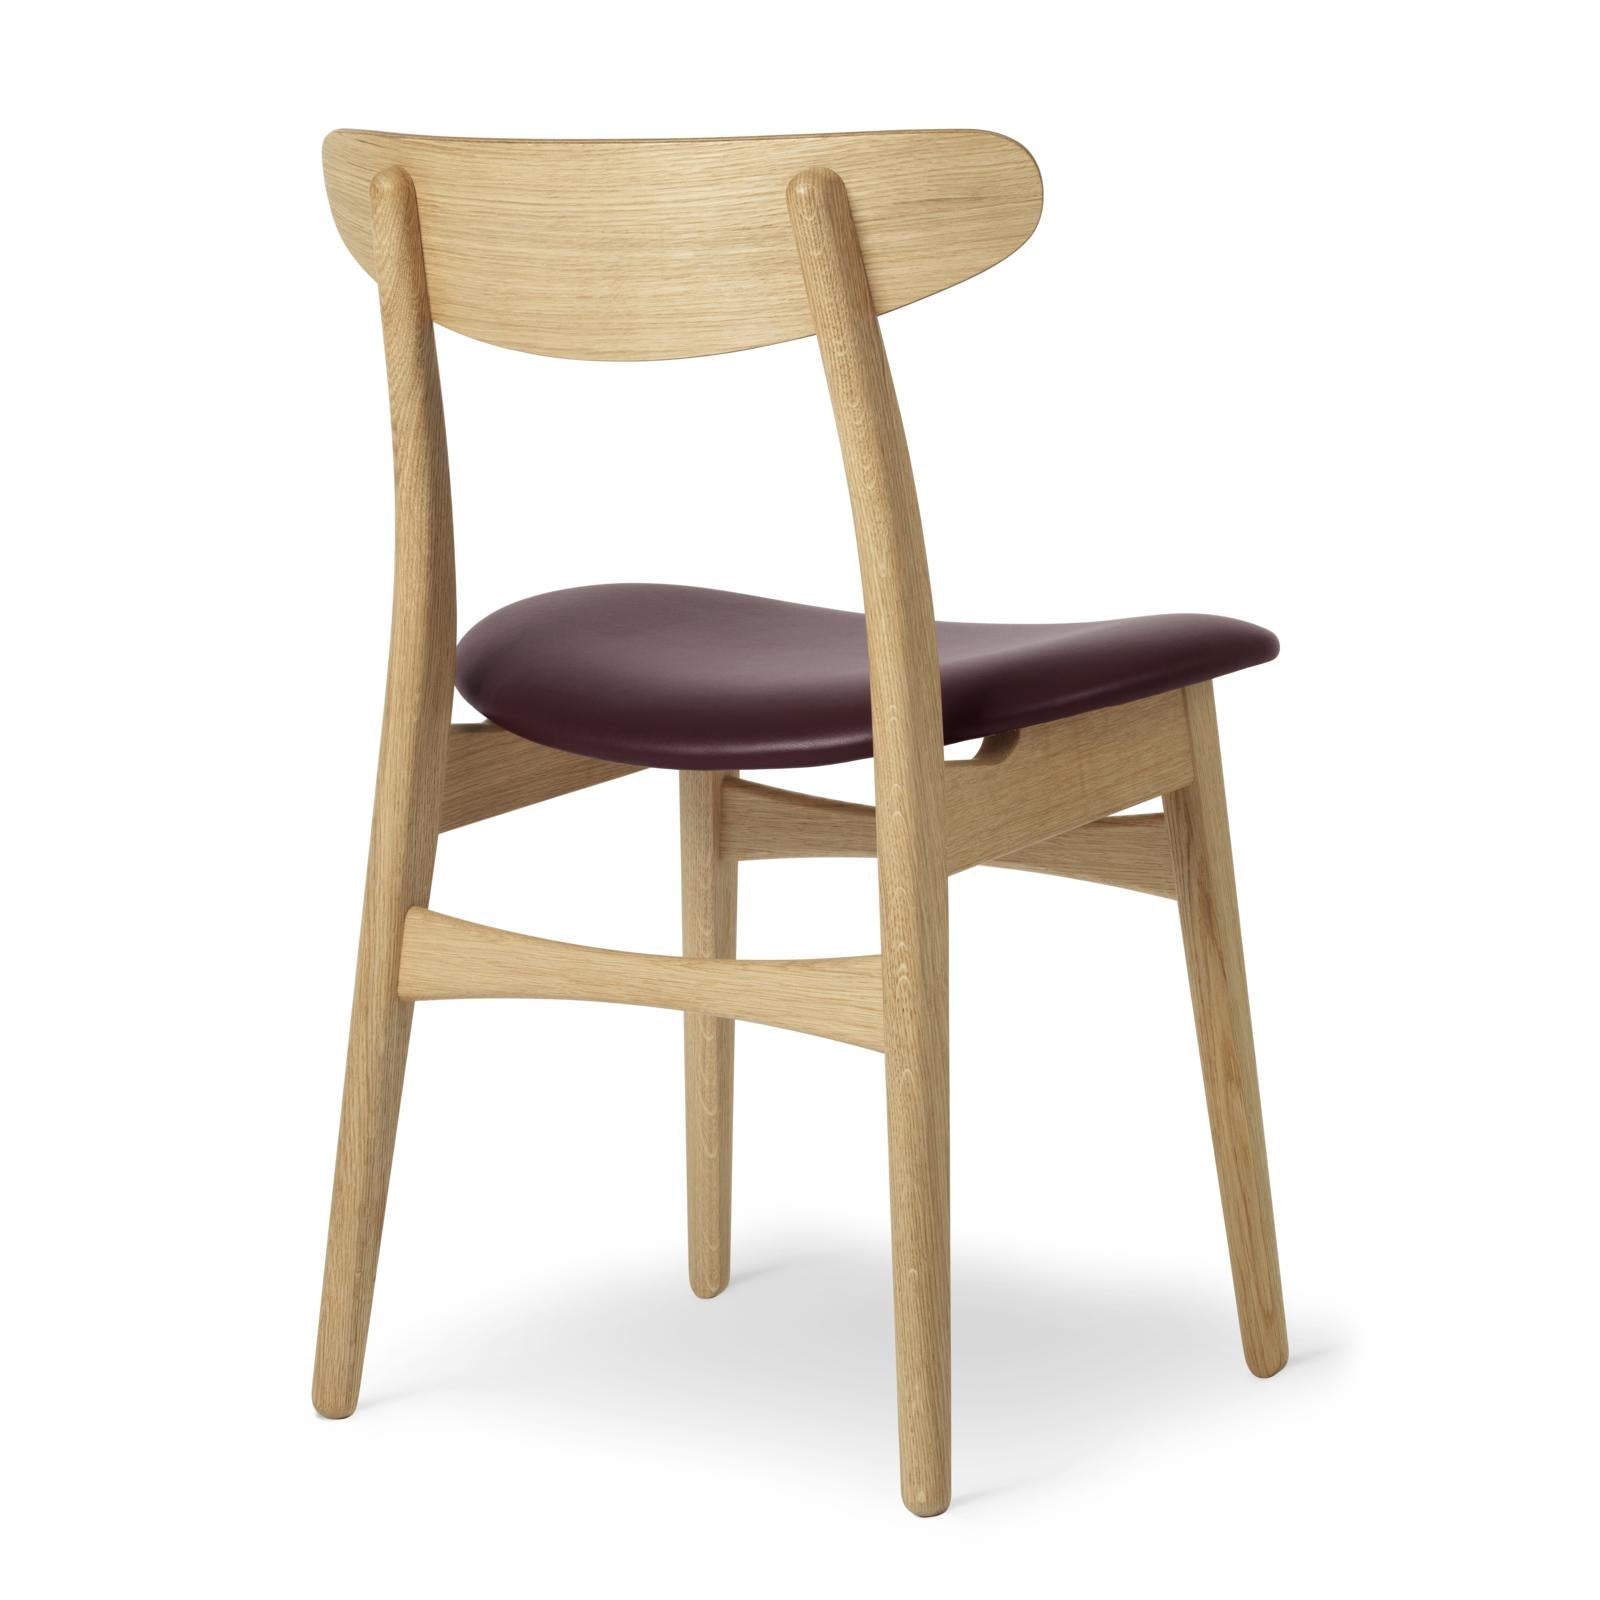 Carl Hansen Ch30p Chair, Oiled Oak, Burgundy Leather